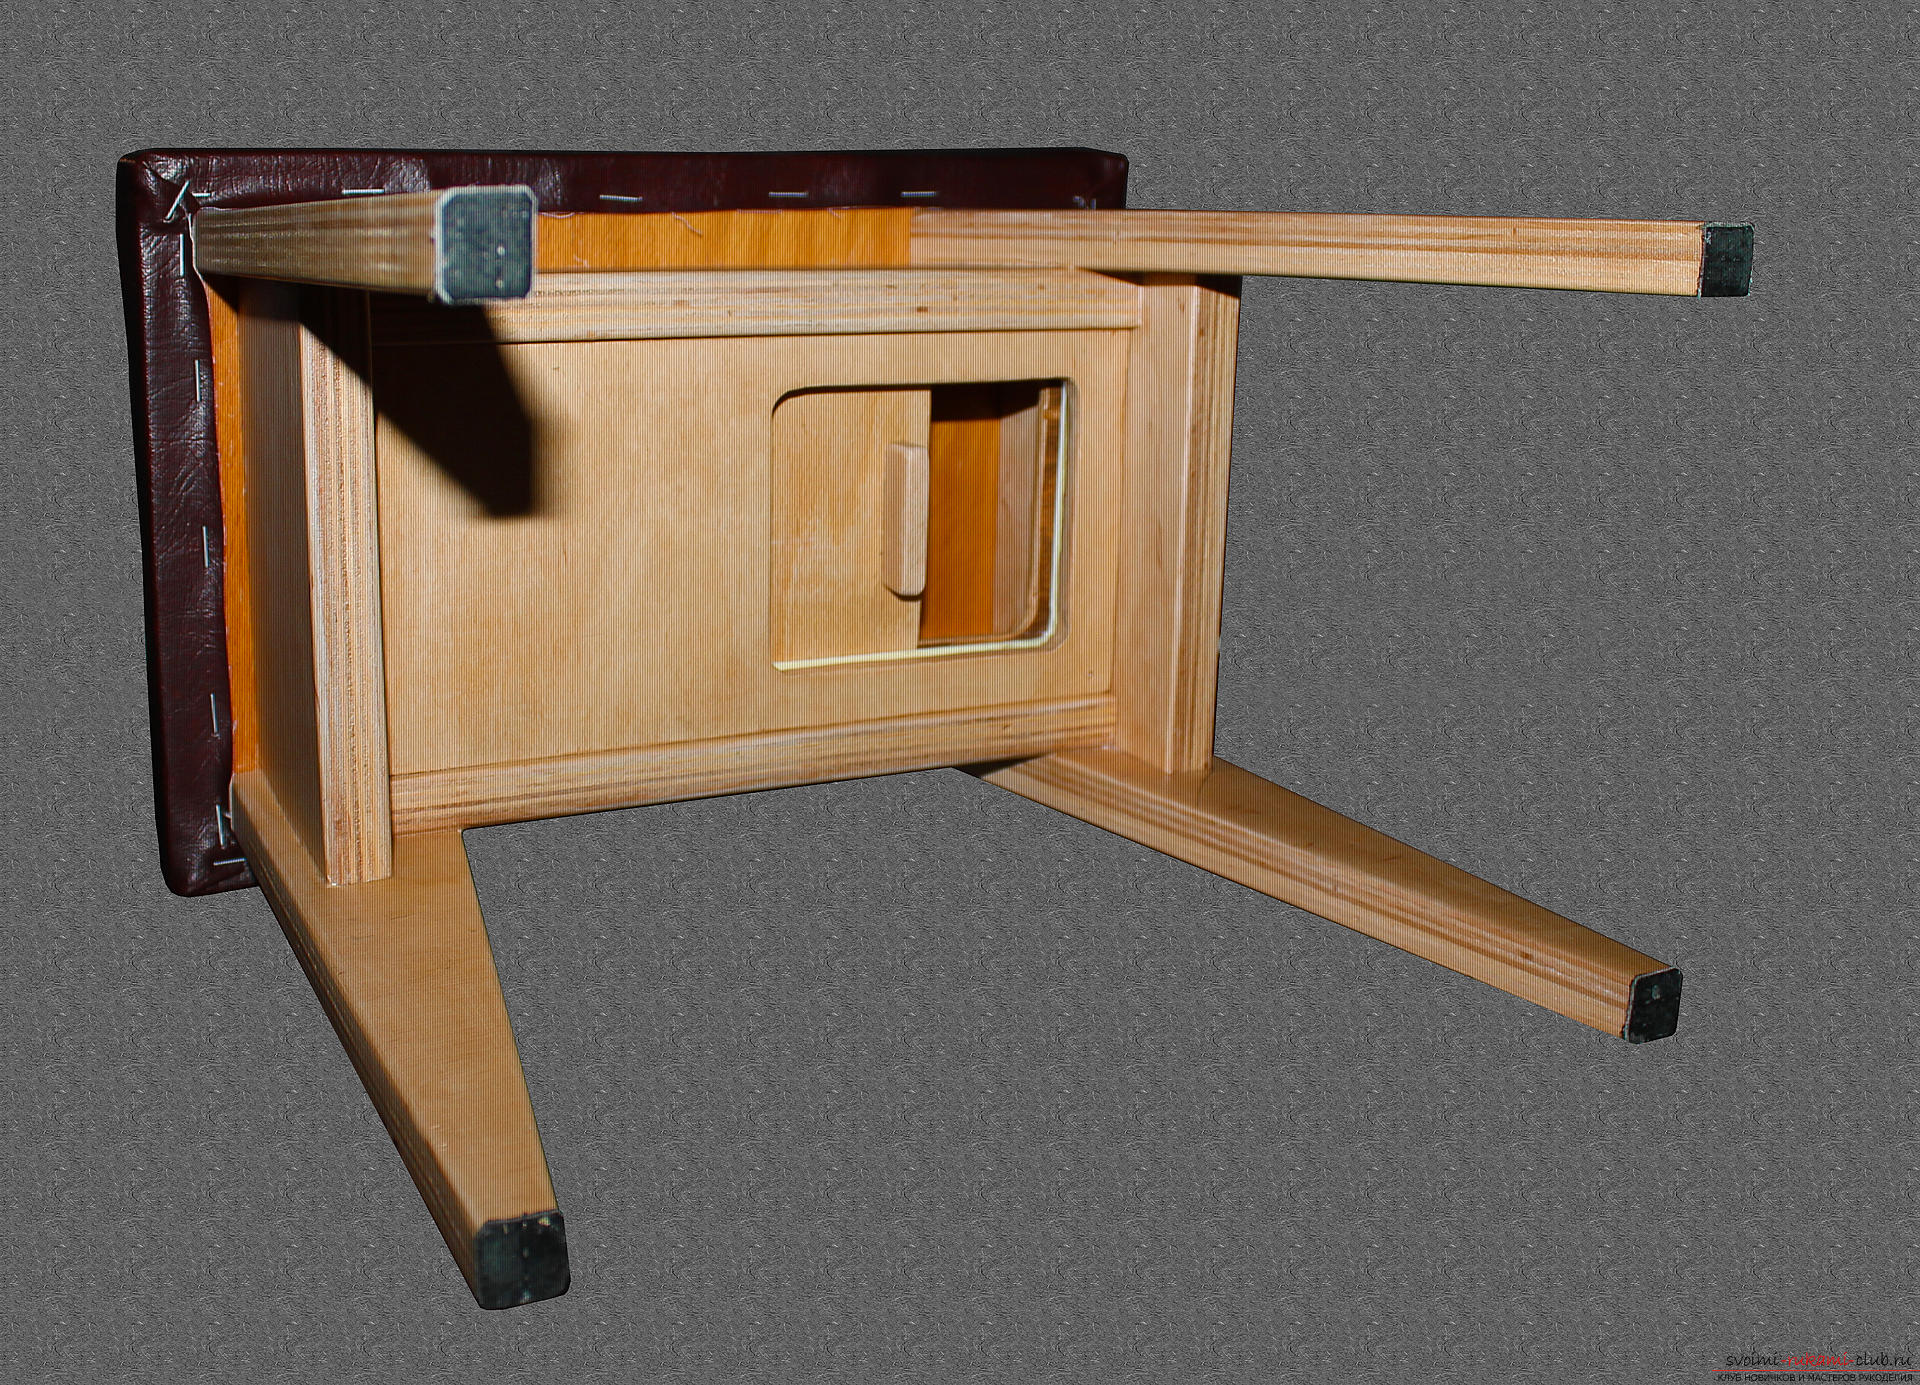 Фото к уроку по изготовлению небольшой скамеечки для ребенка с секретным ящиком. Фото №34